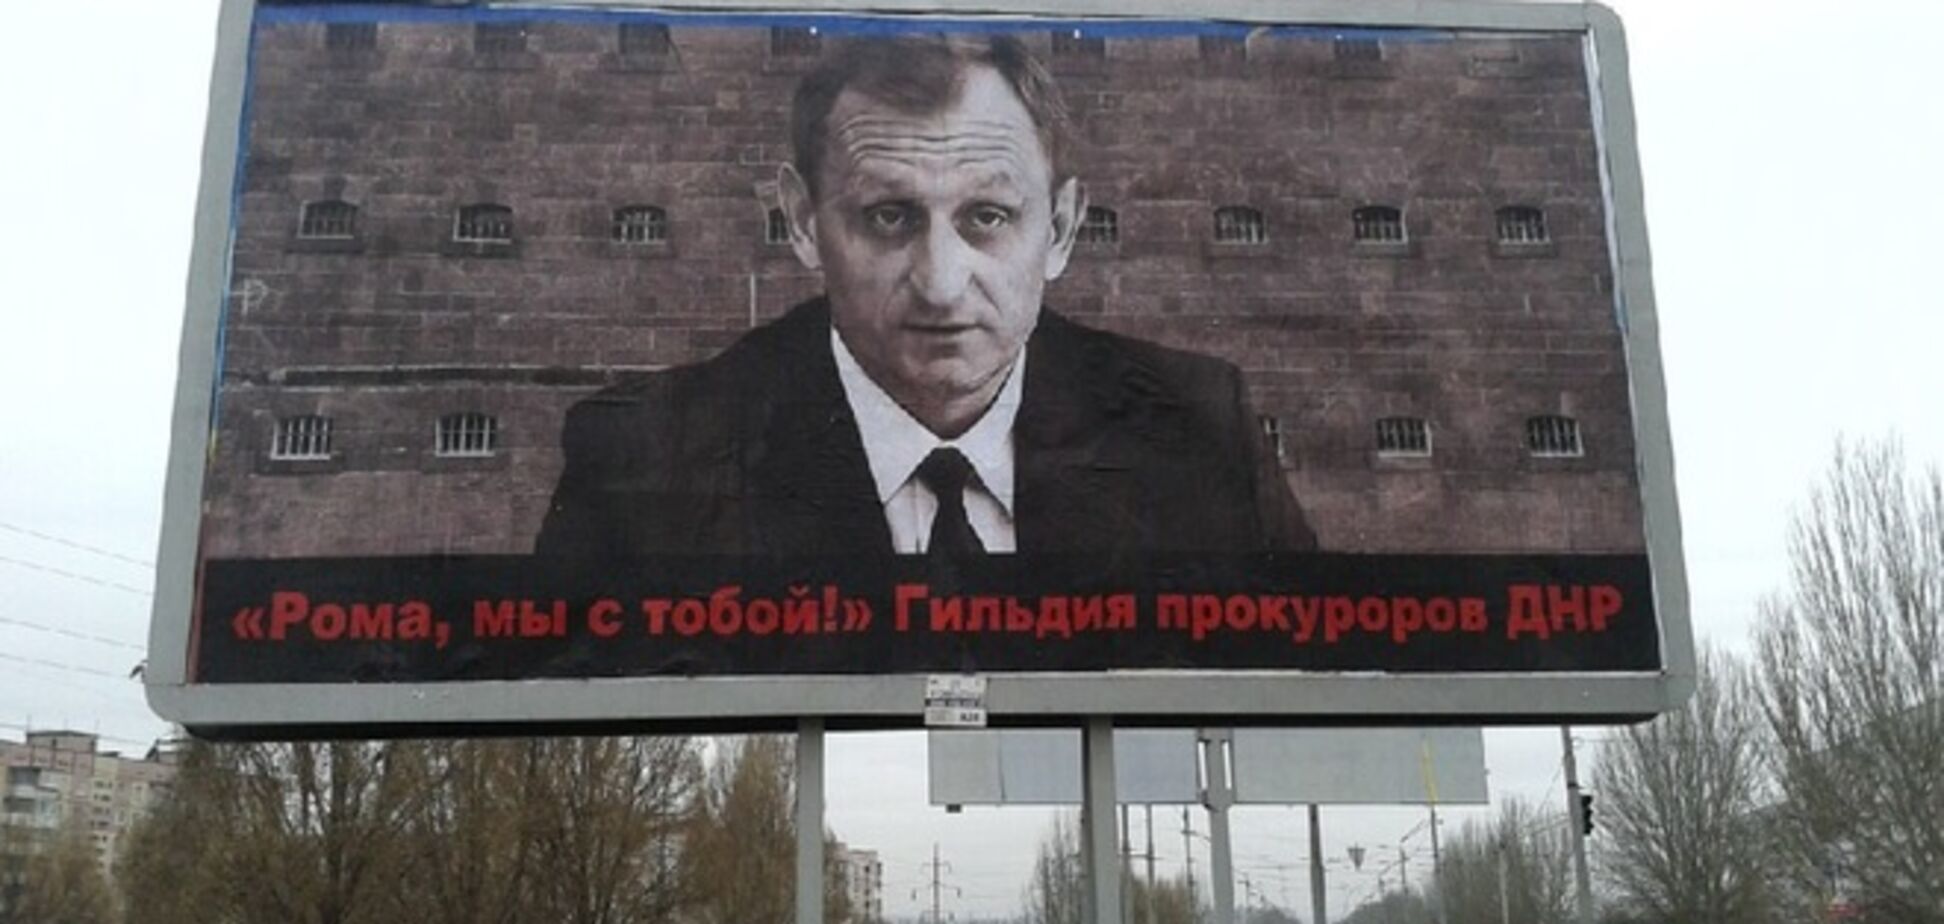 У Дніпропетровську з'явилися білборди зі скандальним прокурором та підписом 'ДНР': опубліковано фото